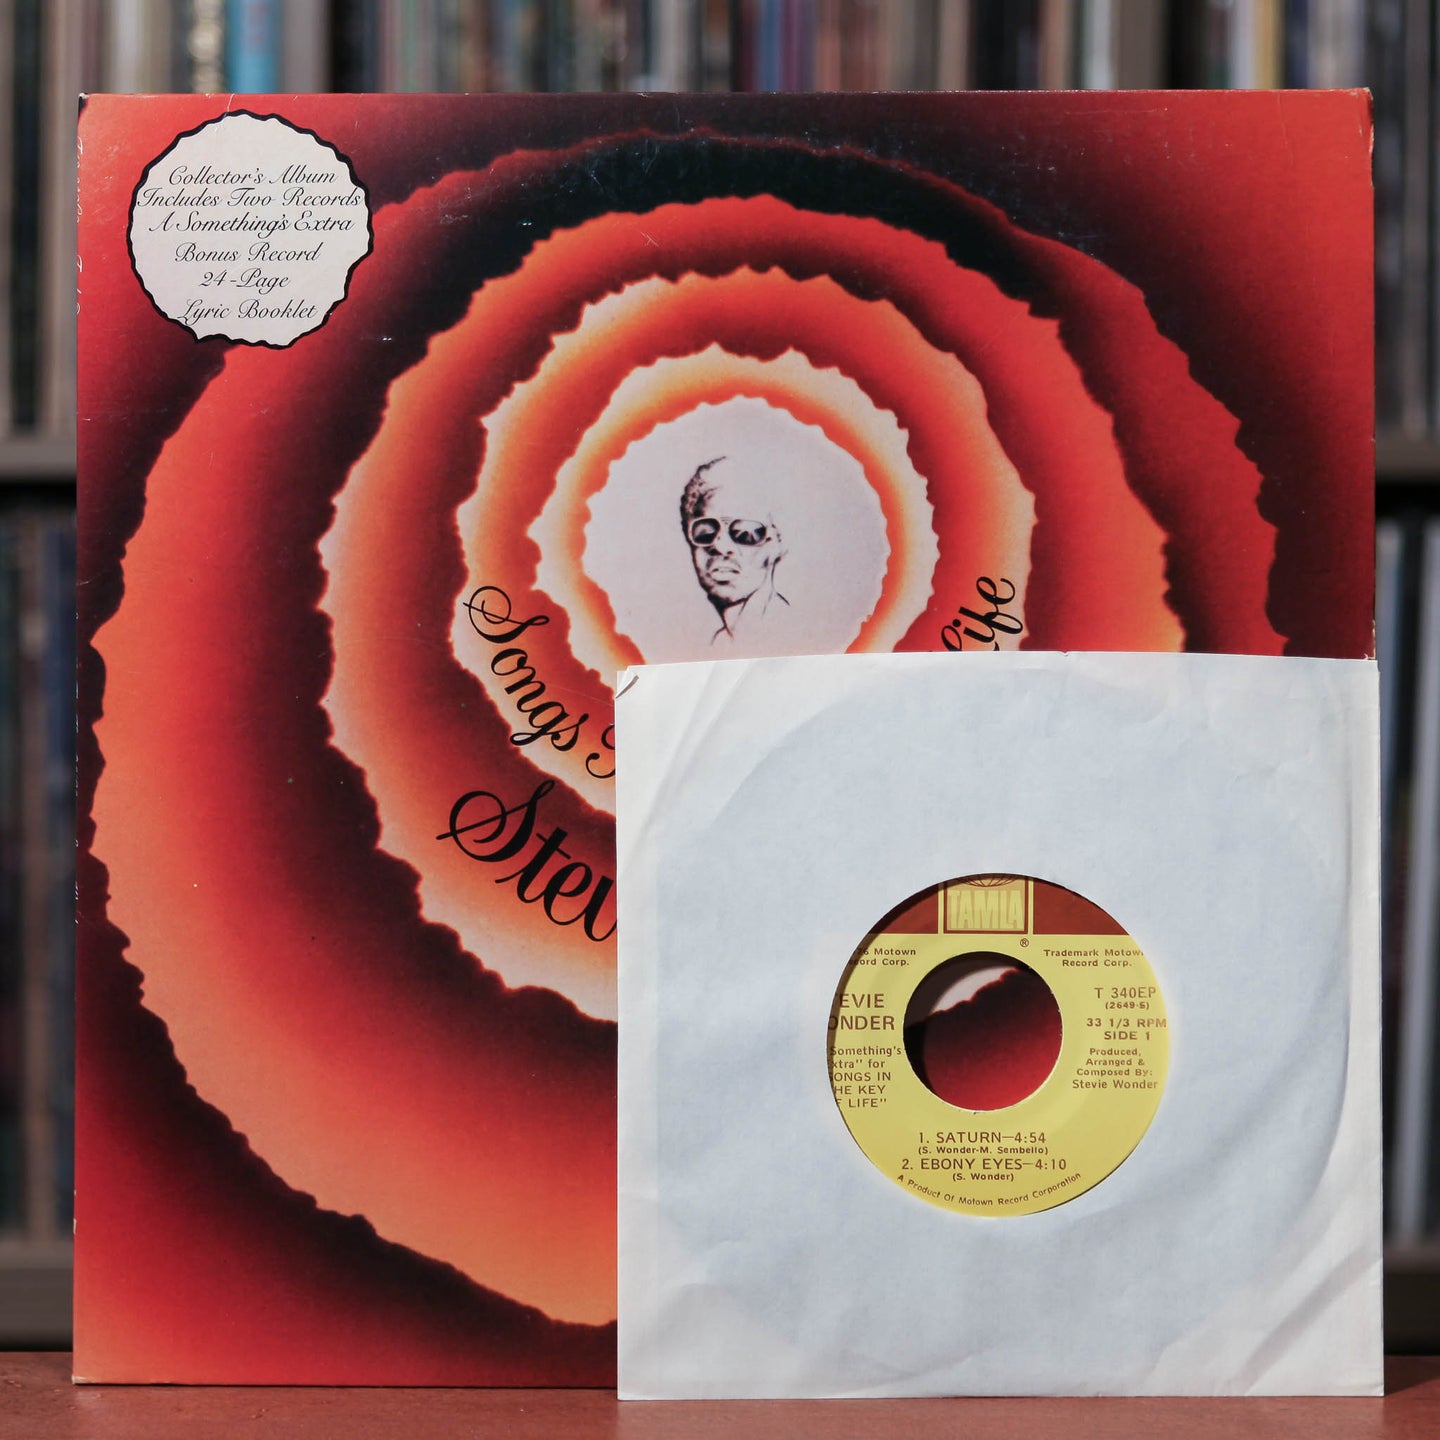 Stevie Wonder - Songs In The Key Of Life - 2LP - 1976 Tamla, VG+/VG+ w/ 7